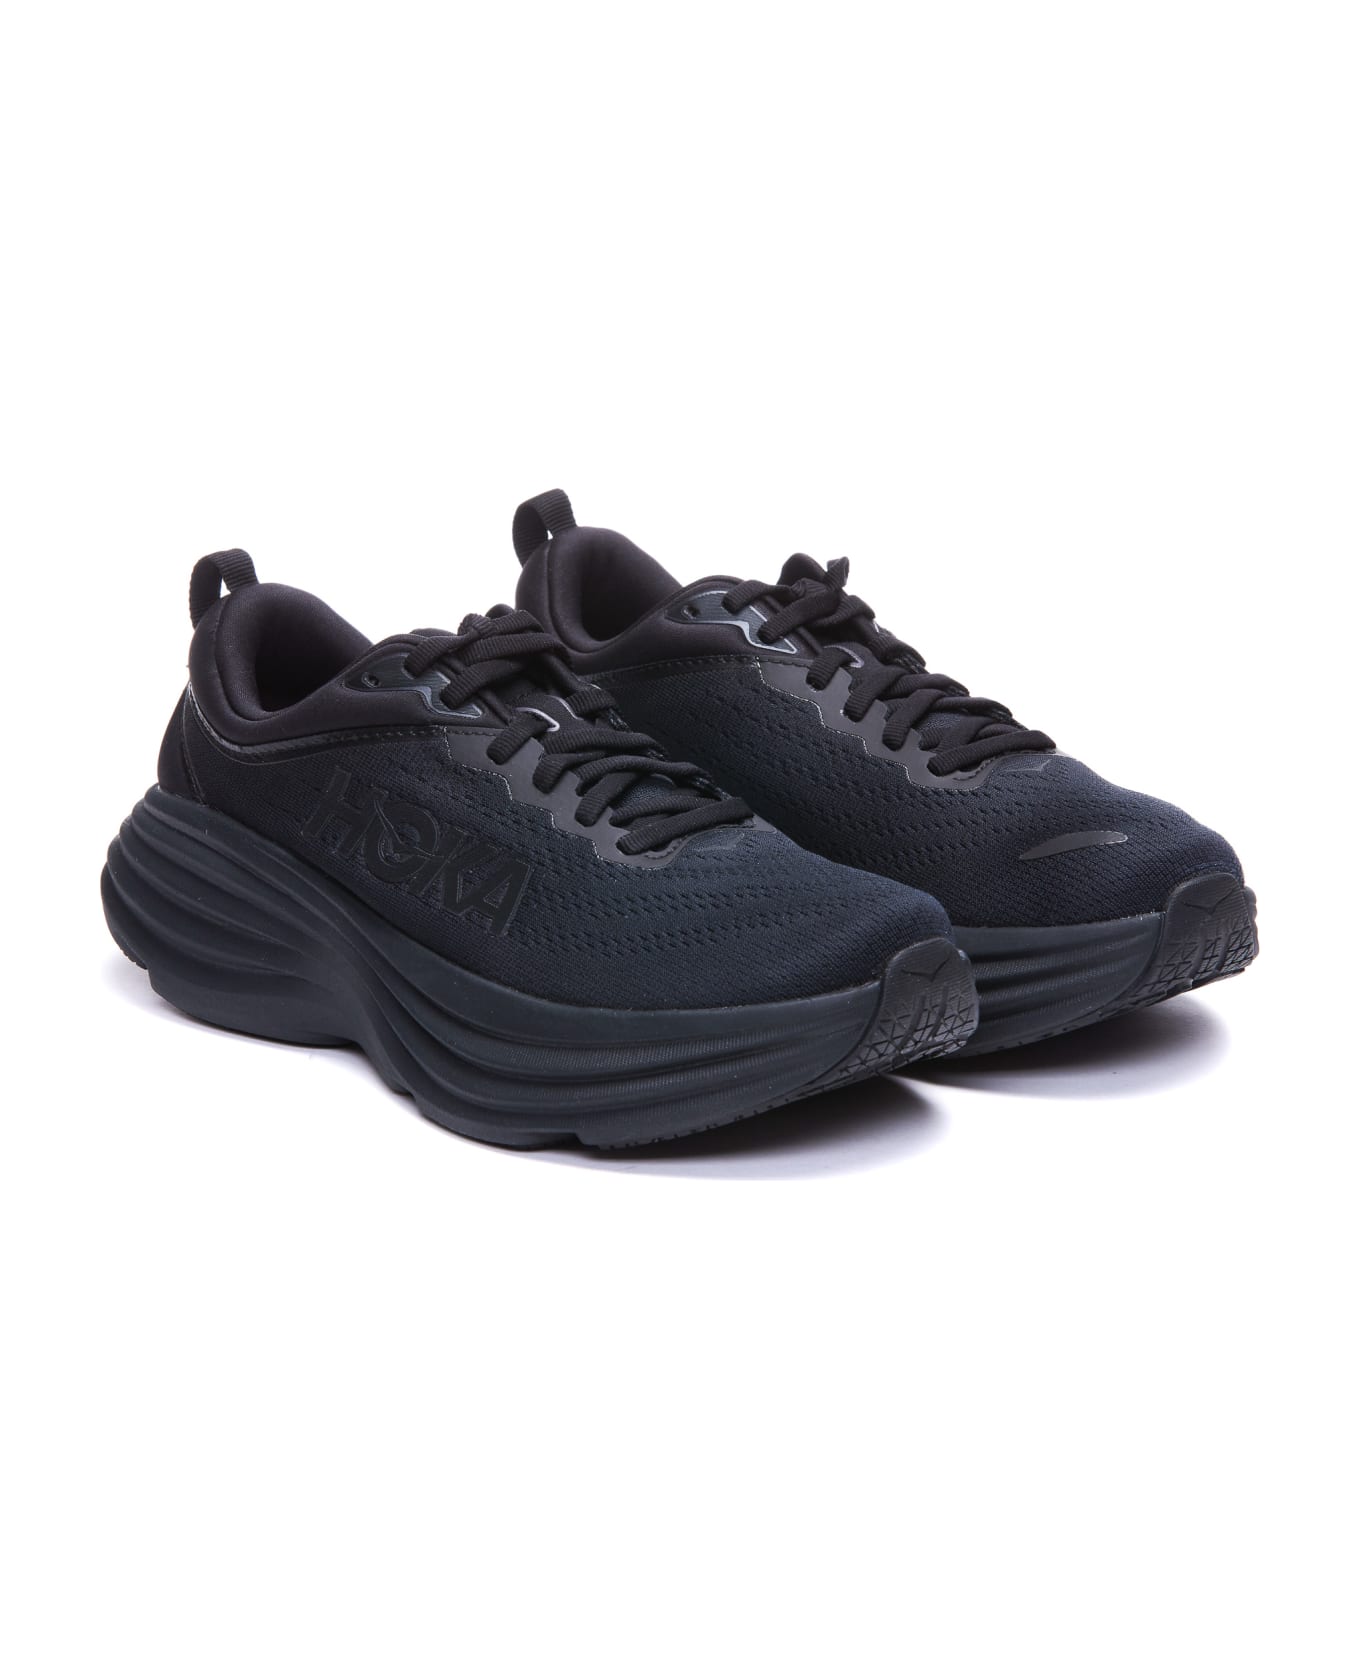 Hoka Bondi 8 Sneakers - Bblc Black / Black